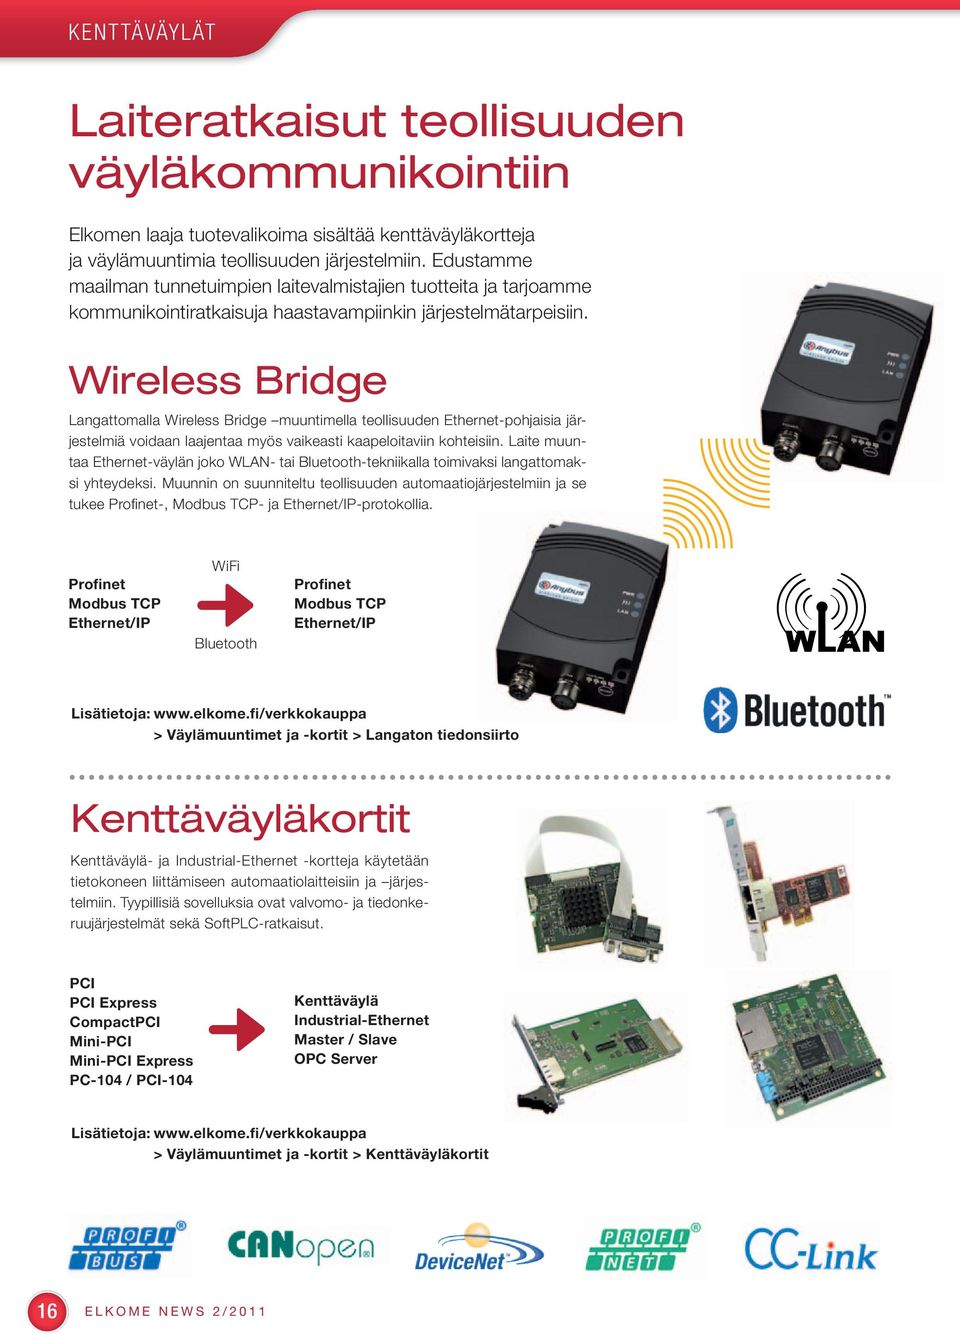 Wireless Bridge Langattomalla Wireless Bridge muuntimella teollisuuden Ethernet-pohjaisia järjestelmiä voidaan laajentaa myös vaikeasti kaapeloitaviin kohteisiin.